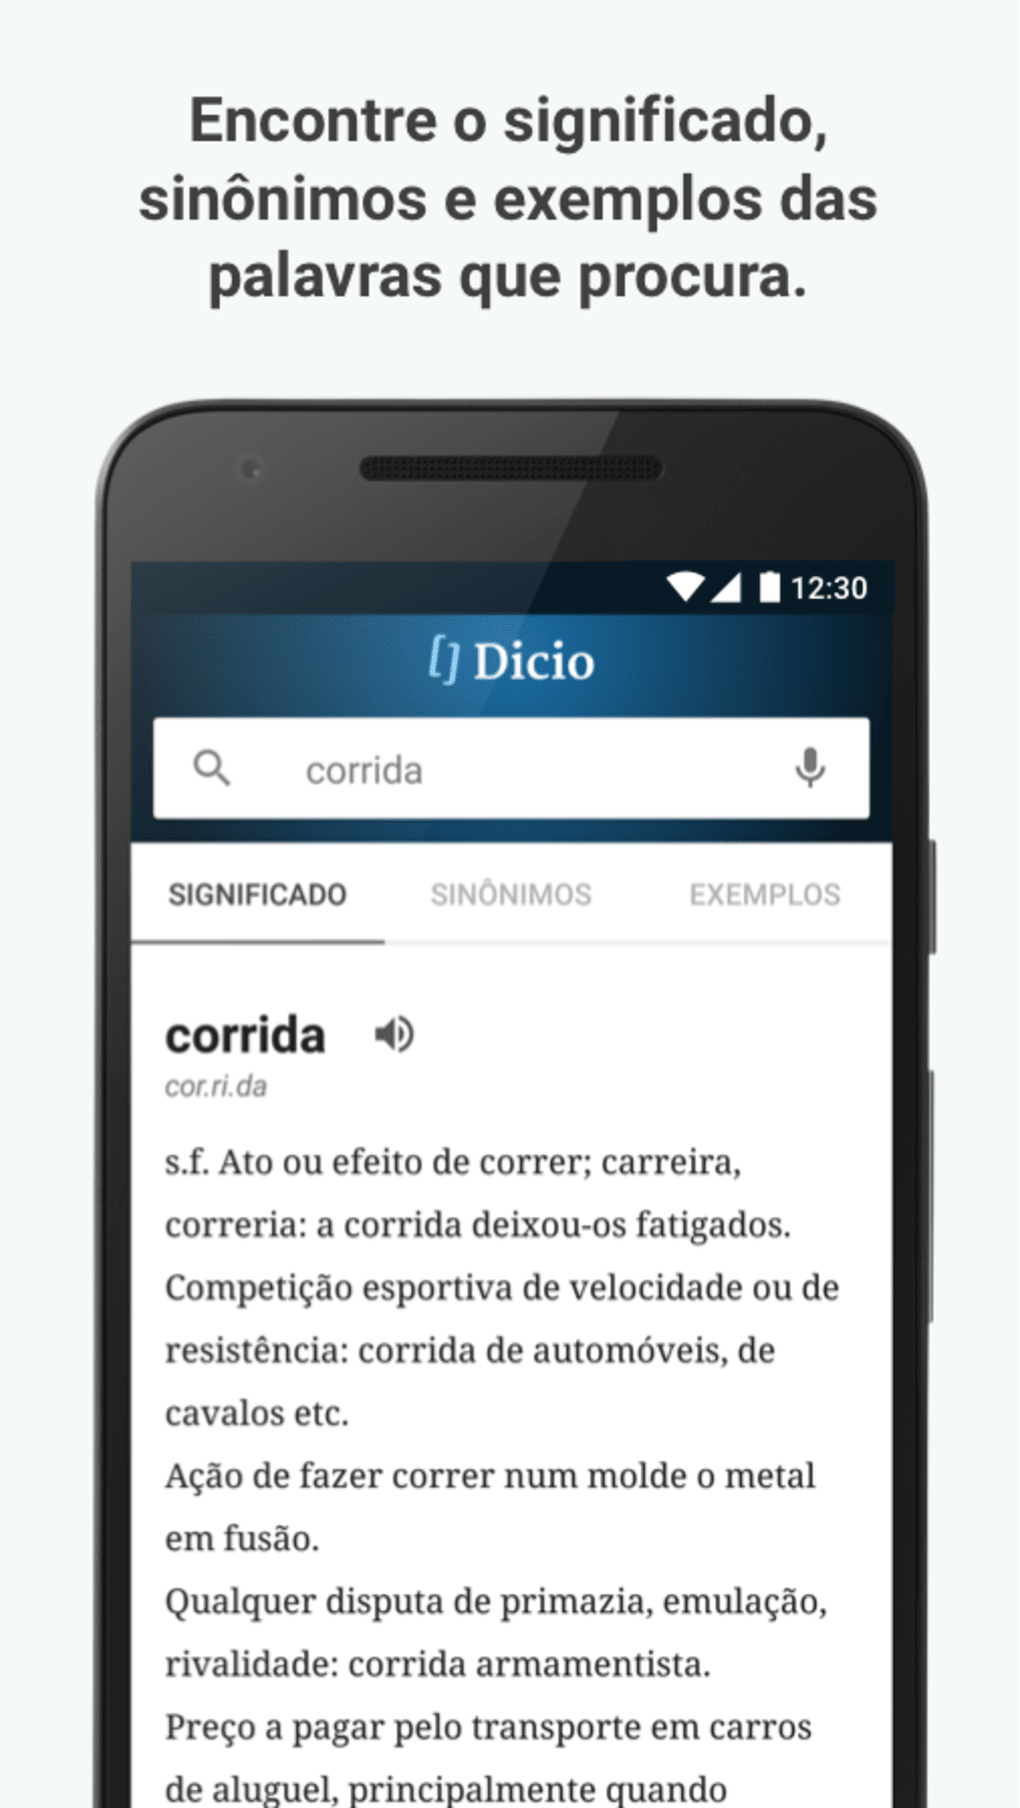 Poder - Dicio, Dicionário Online de Português